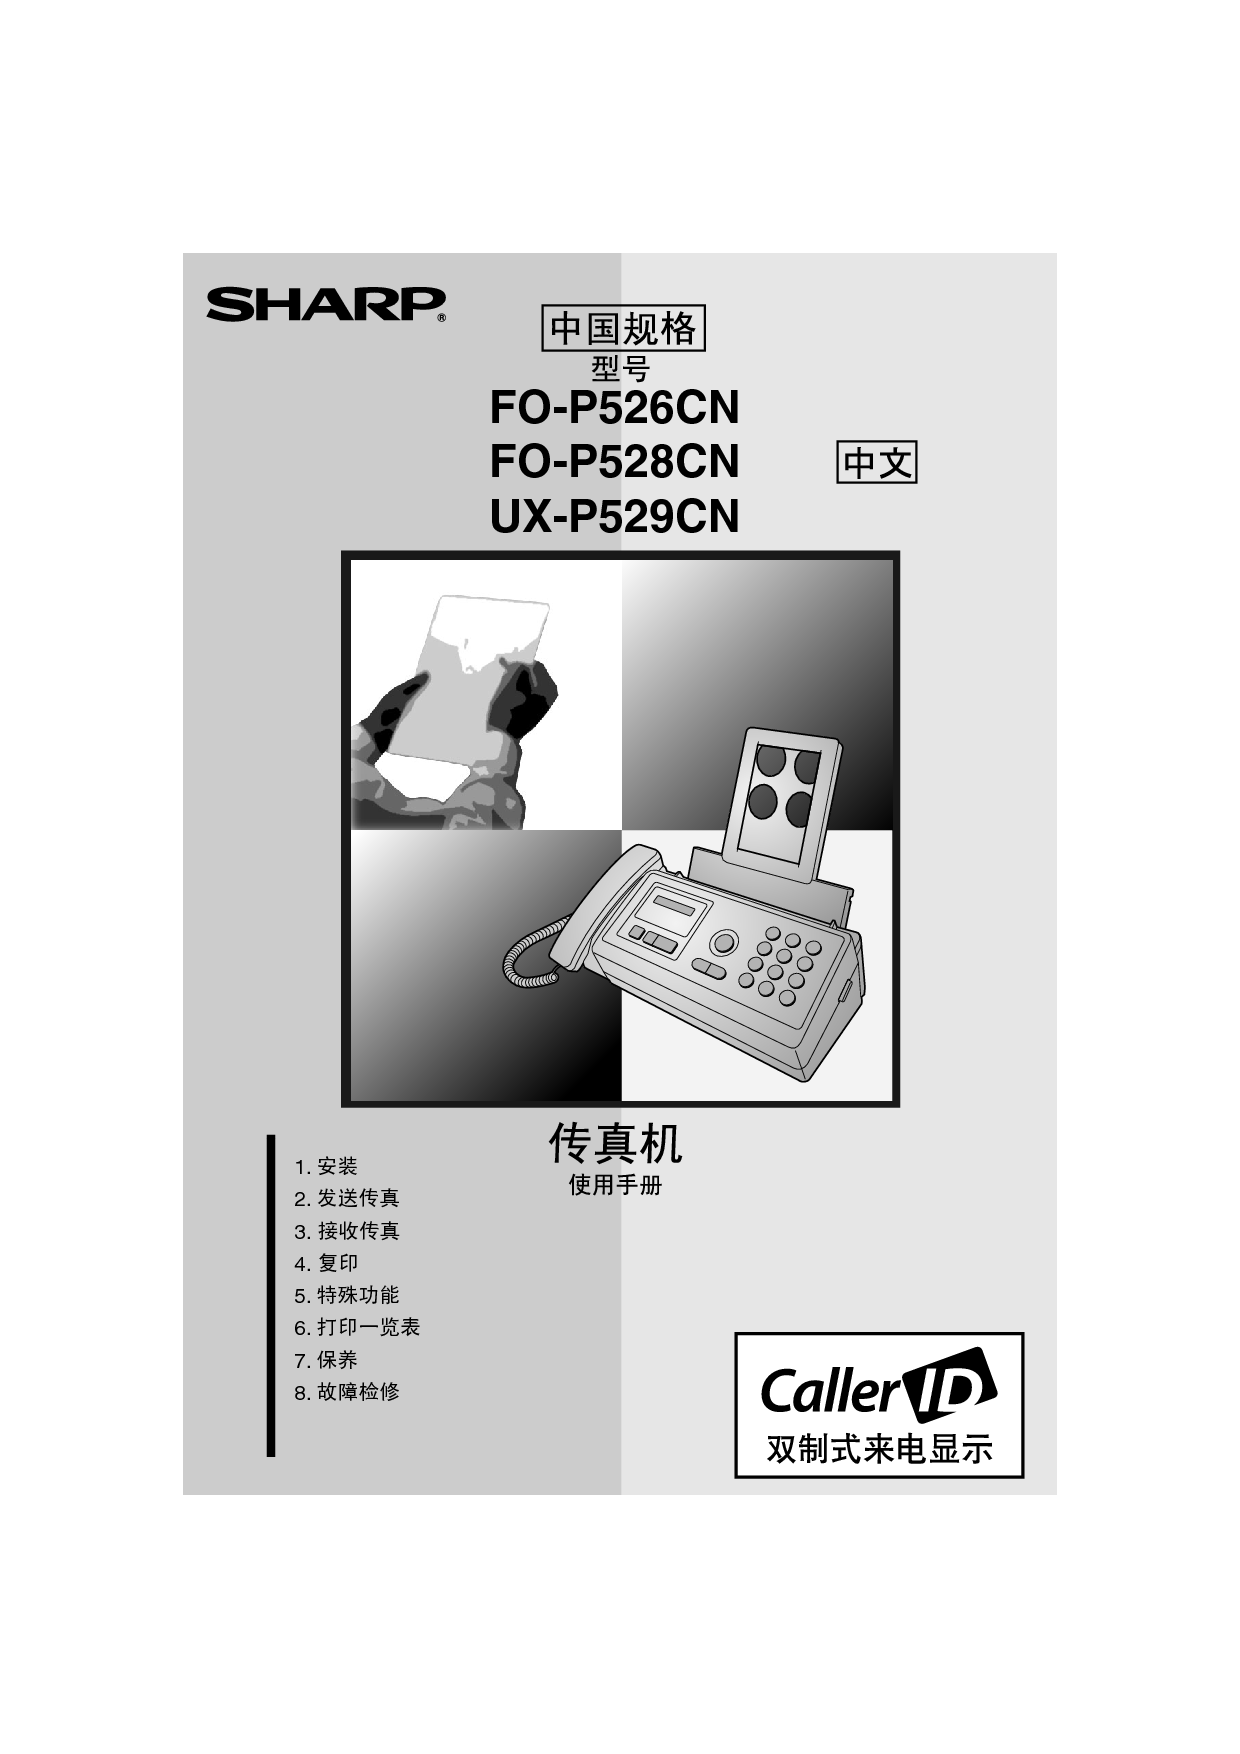 夏普 Sharp FO-P526CN 操作手册 封面